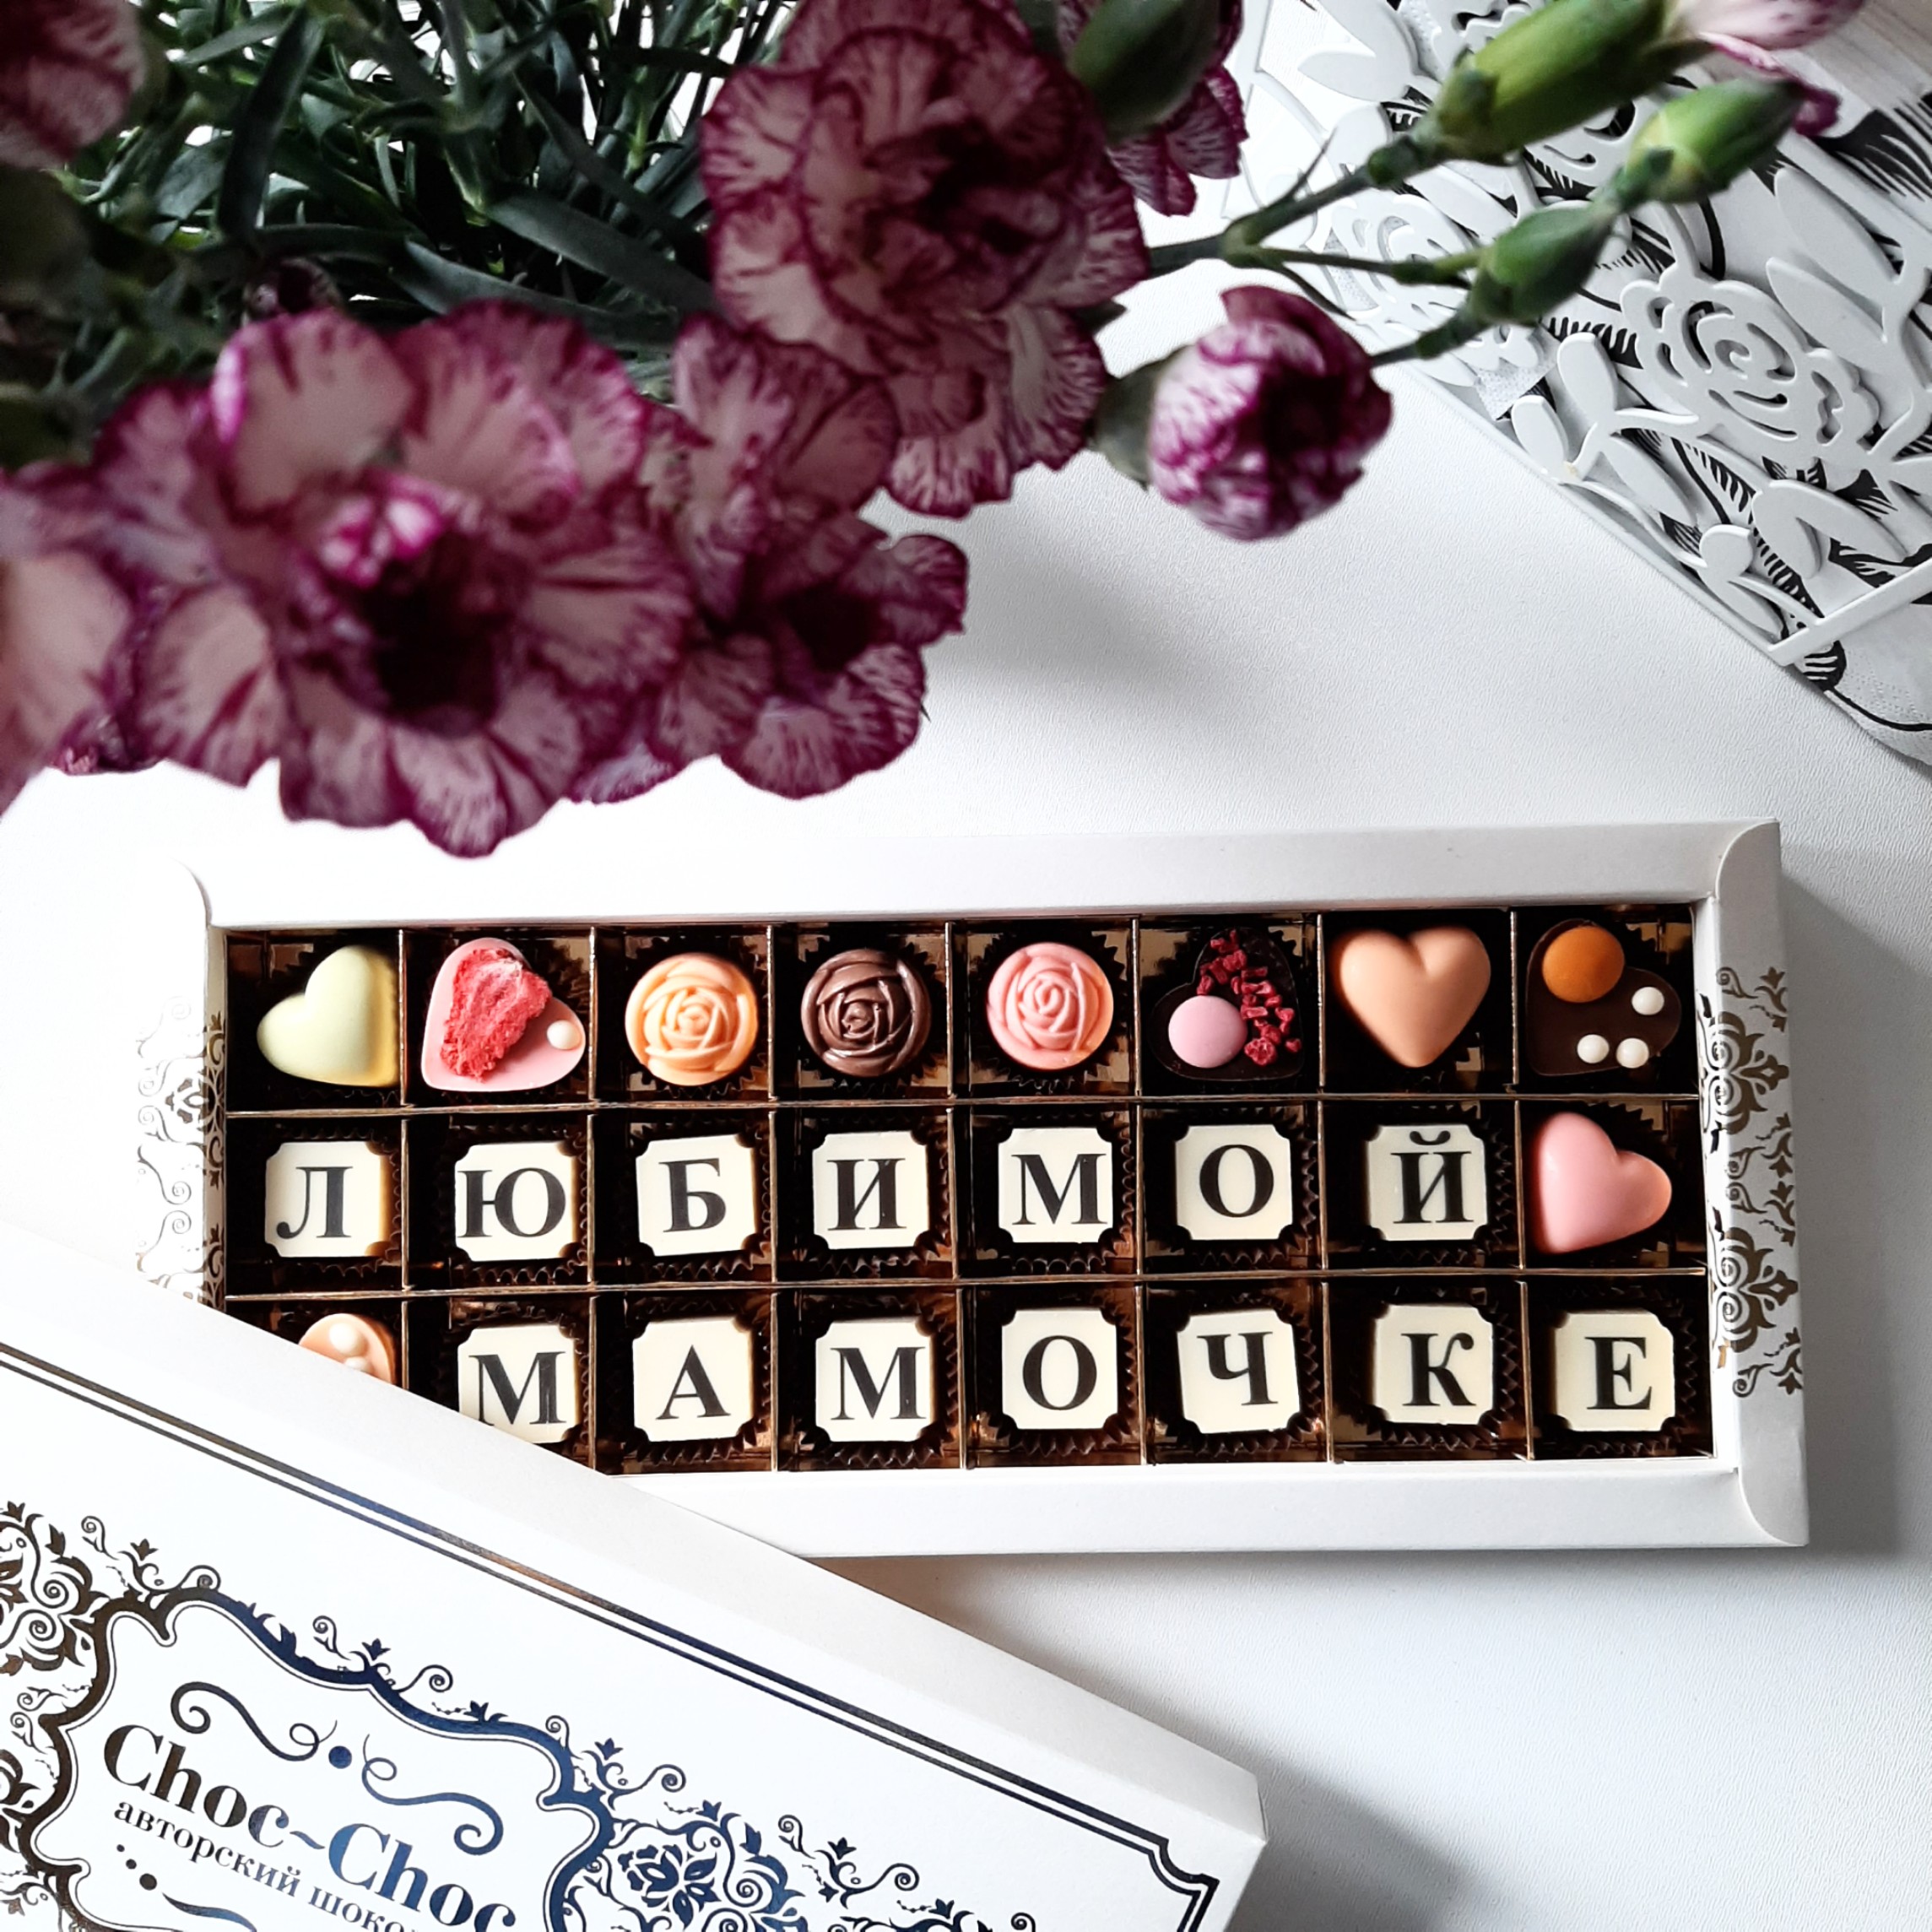 Розы из бельгийского шоколада. Цветы из бельгийского шоколада своими руками. Choc-choc авторский шоколад варианты. Лилия из бельгийского шоколада.